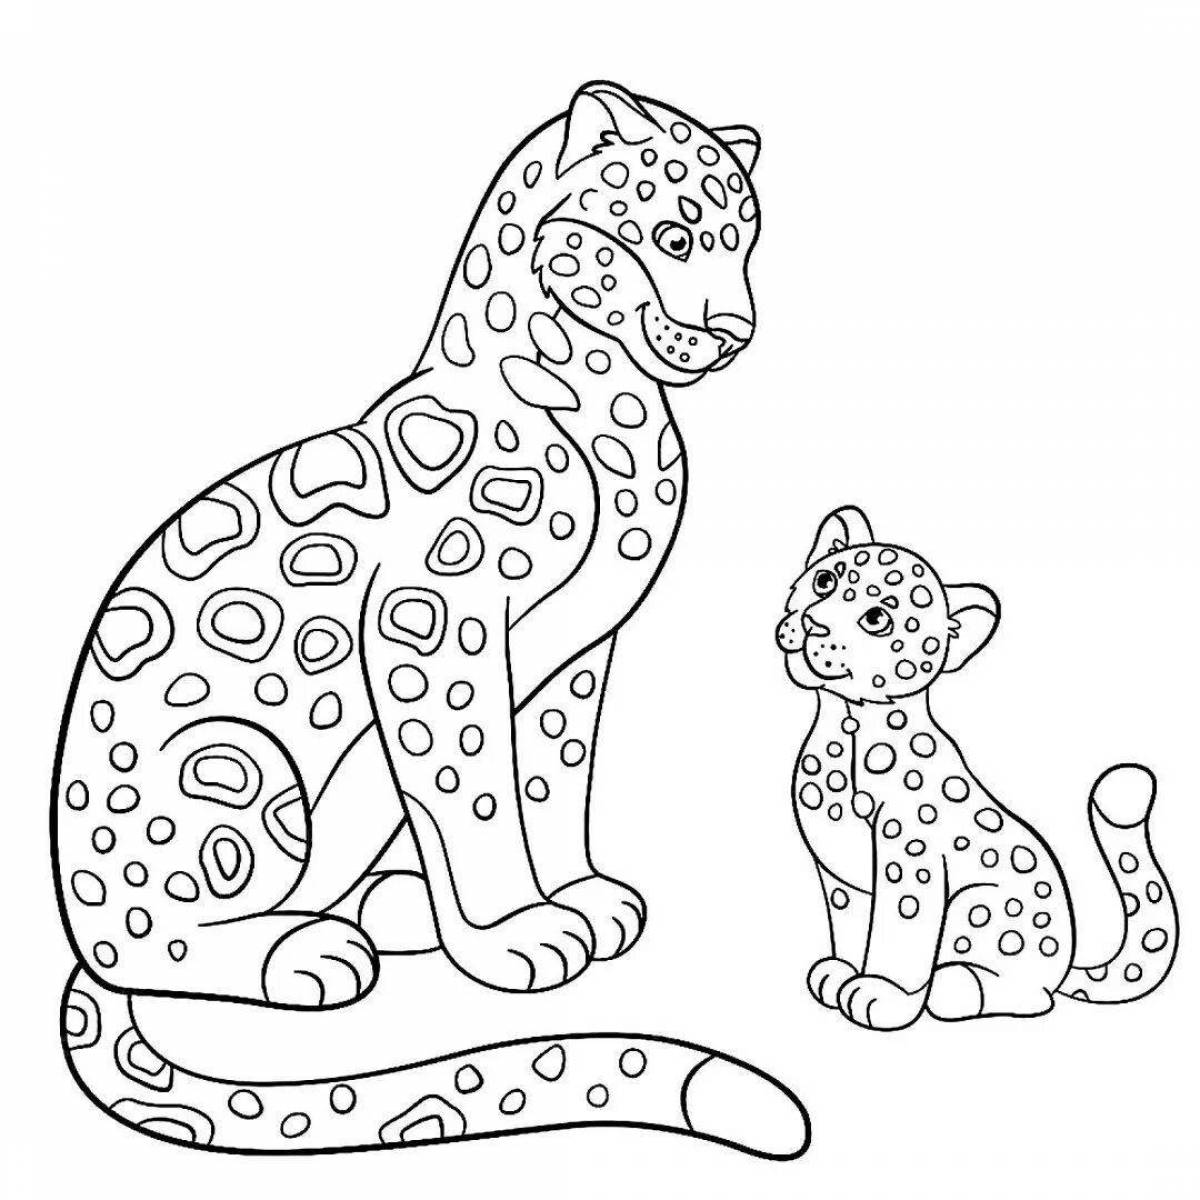 Fun jaguar coloring book for kids